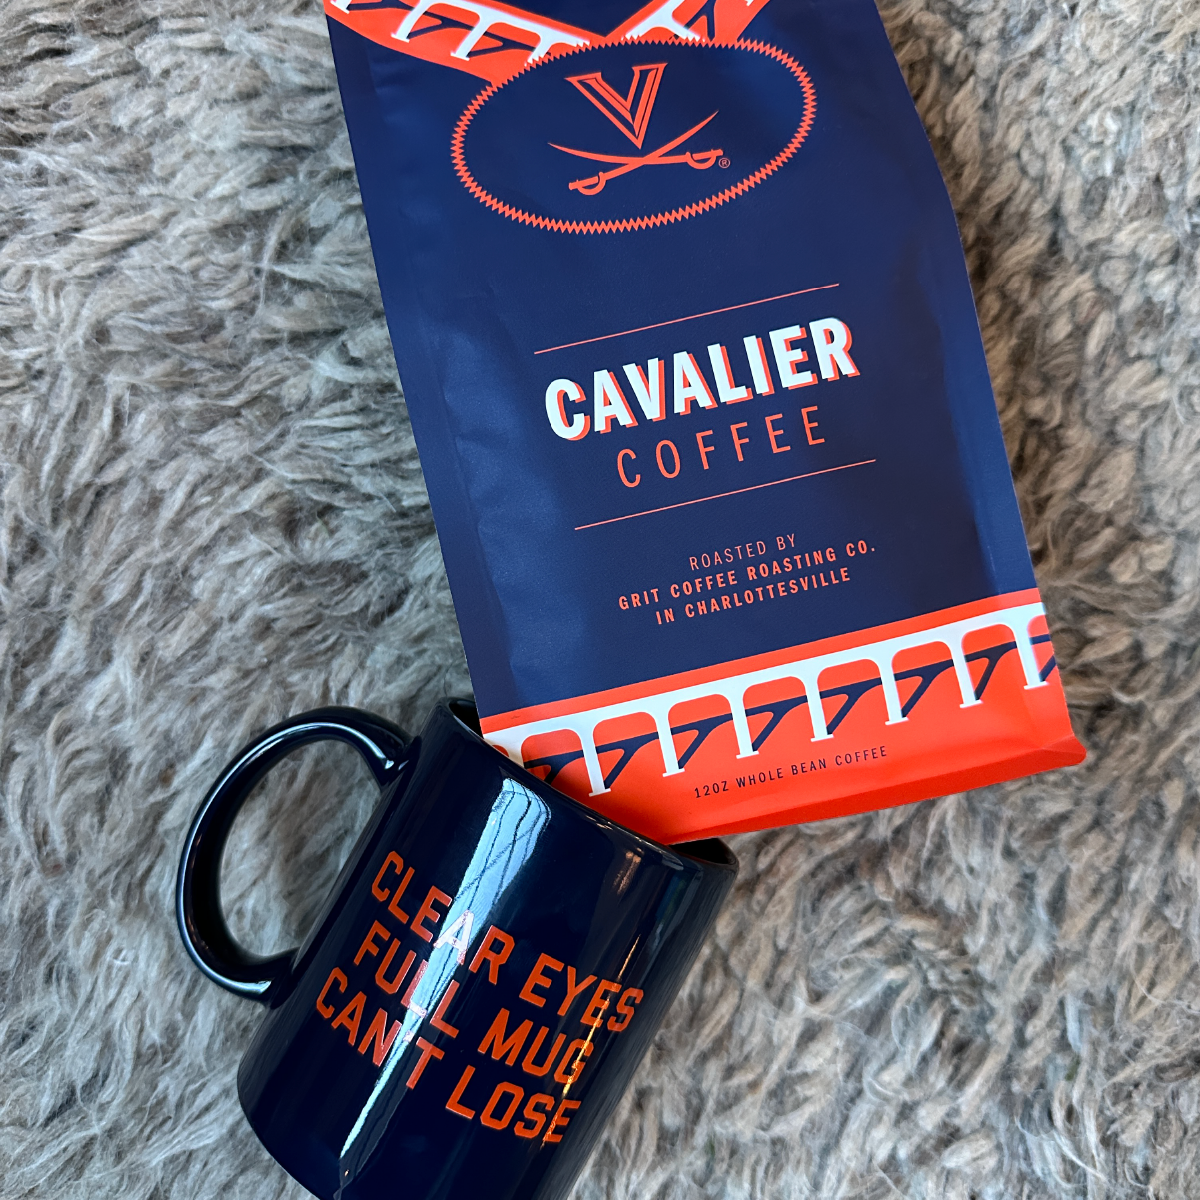 Cavalier Package